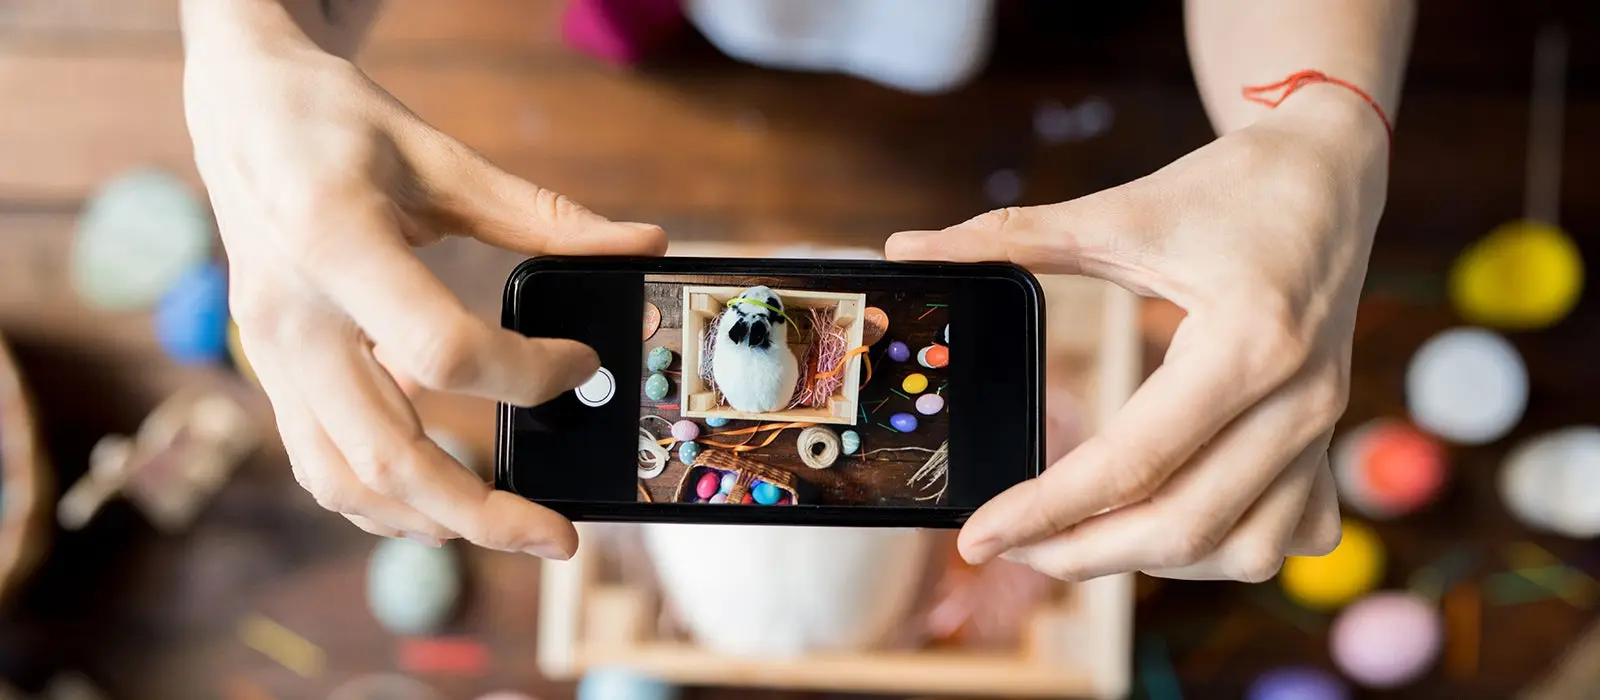 joven con su telefono en las manos tomando una fotografia de una caja con un conejo dentro creando contenido para redes sociales 